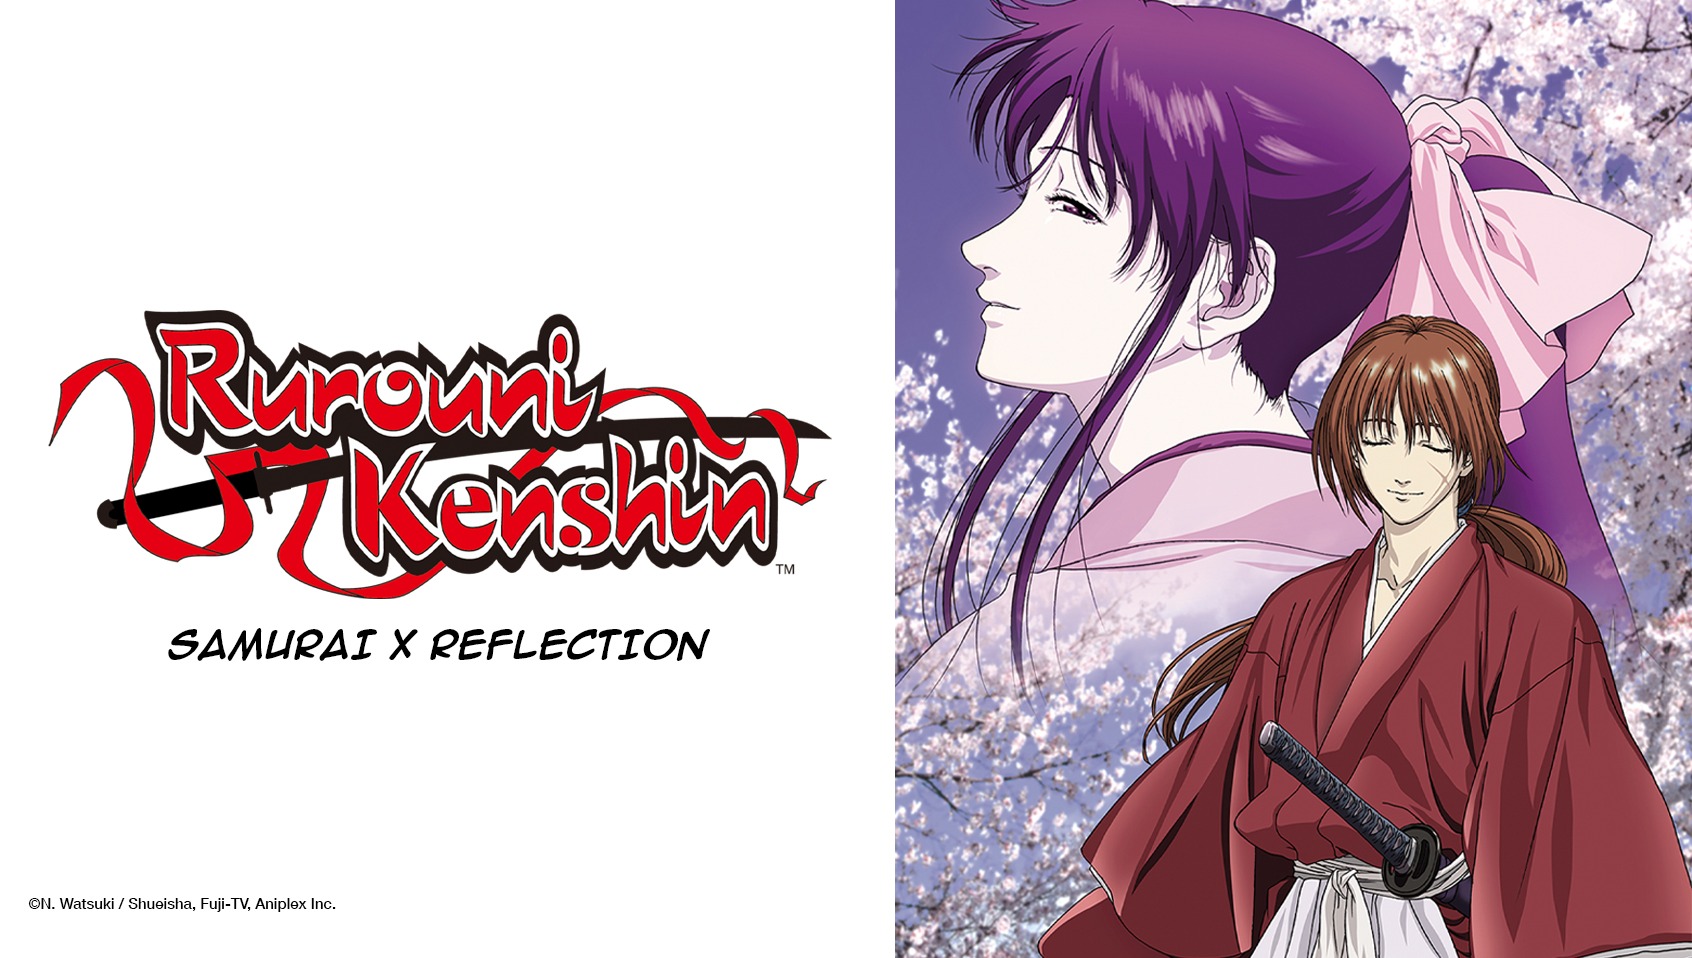 Rurouni Kenshin Samurai X Reflection - Watch HD Video Online - iFlix